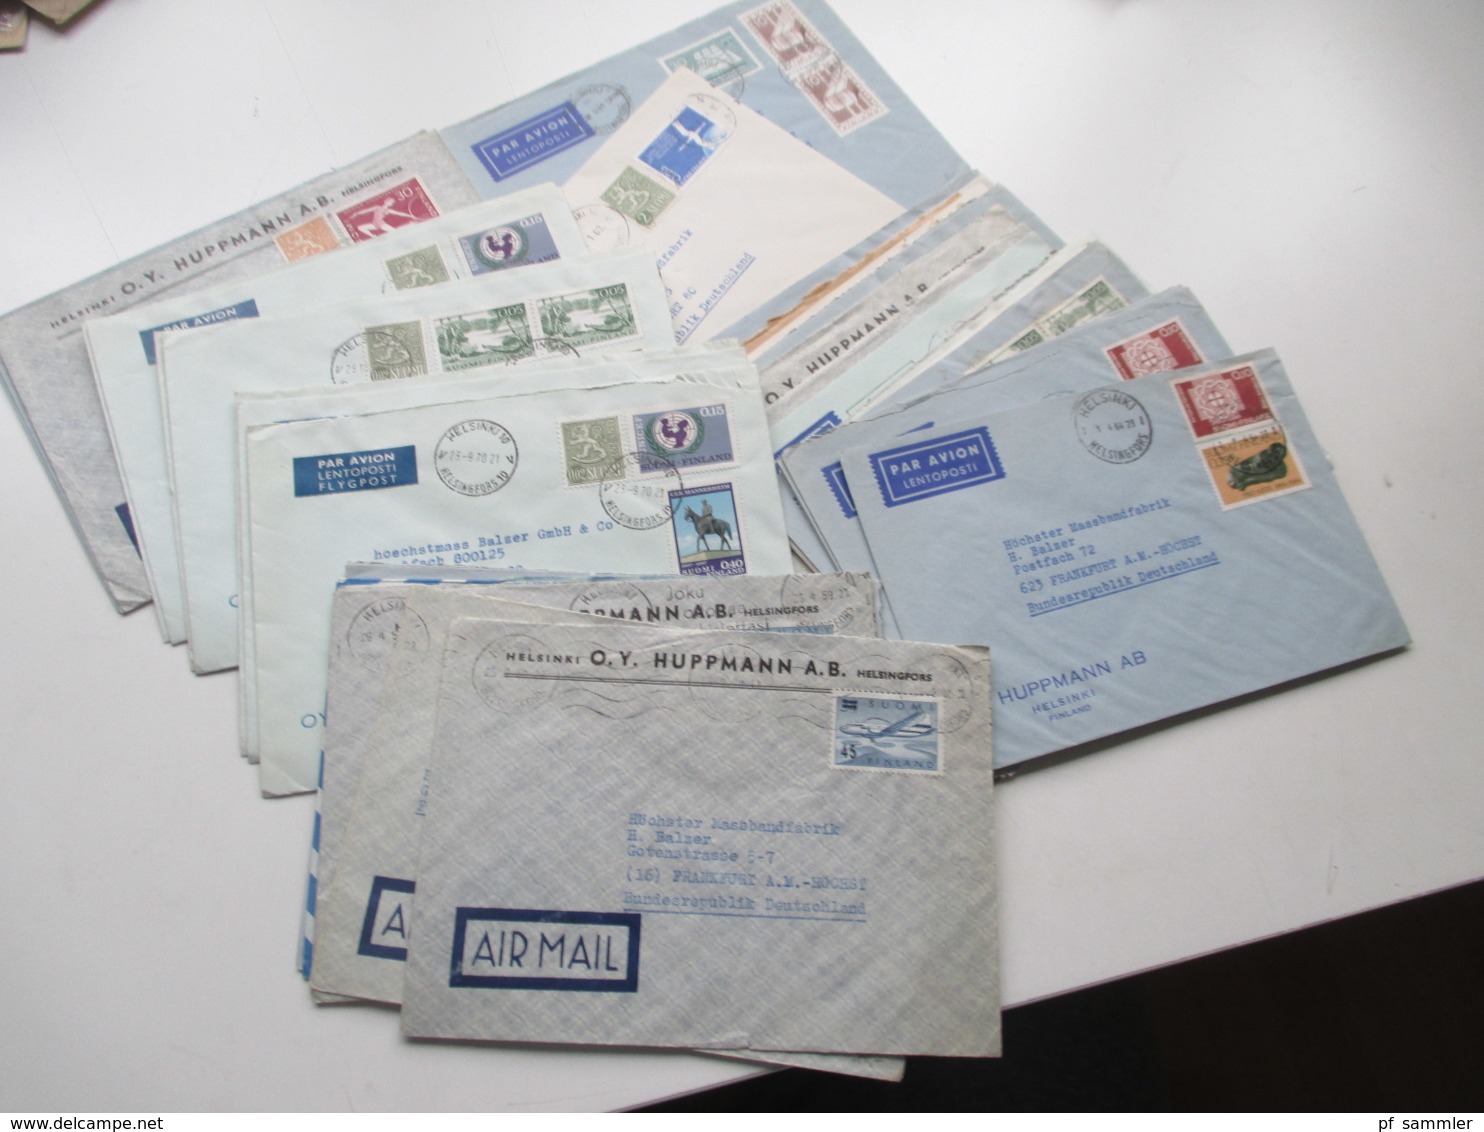 Finnland 1958 - 74 Luftpost Briefe 42 Stk. Firmen Korrespondenz Auch Freimarke Nr. 505 Flugzeug Mit Aufdruck Usw. - Brieven En Documenten